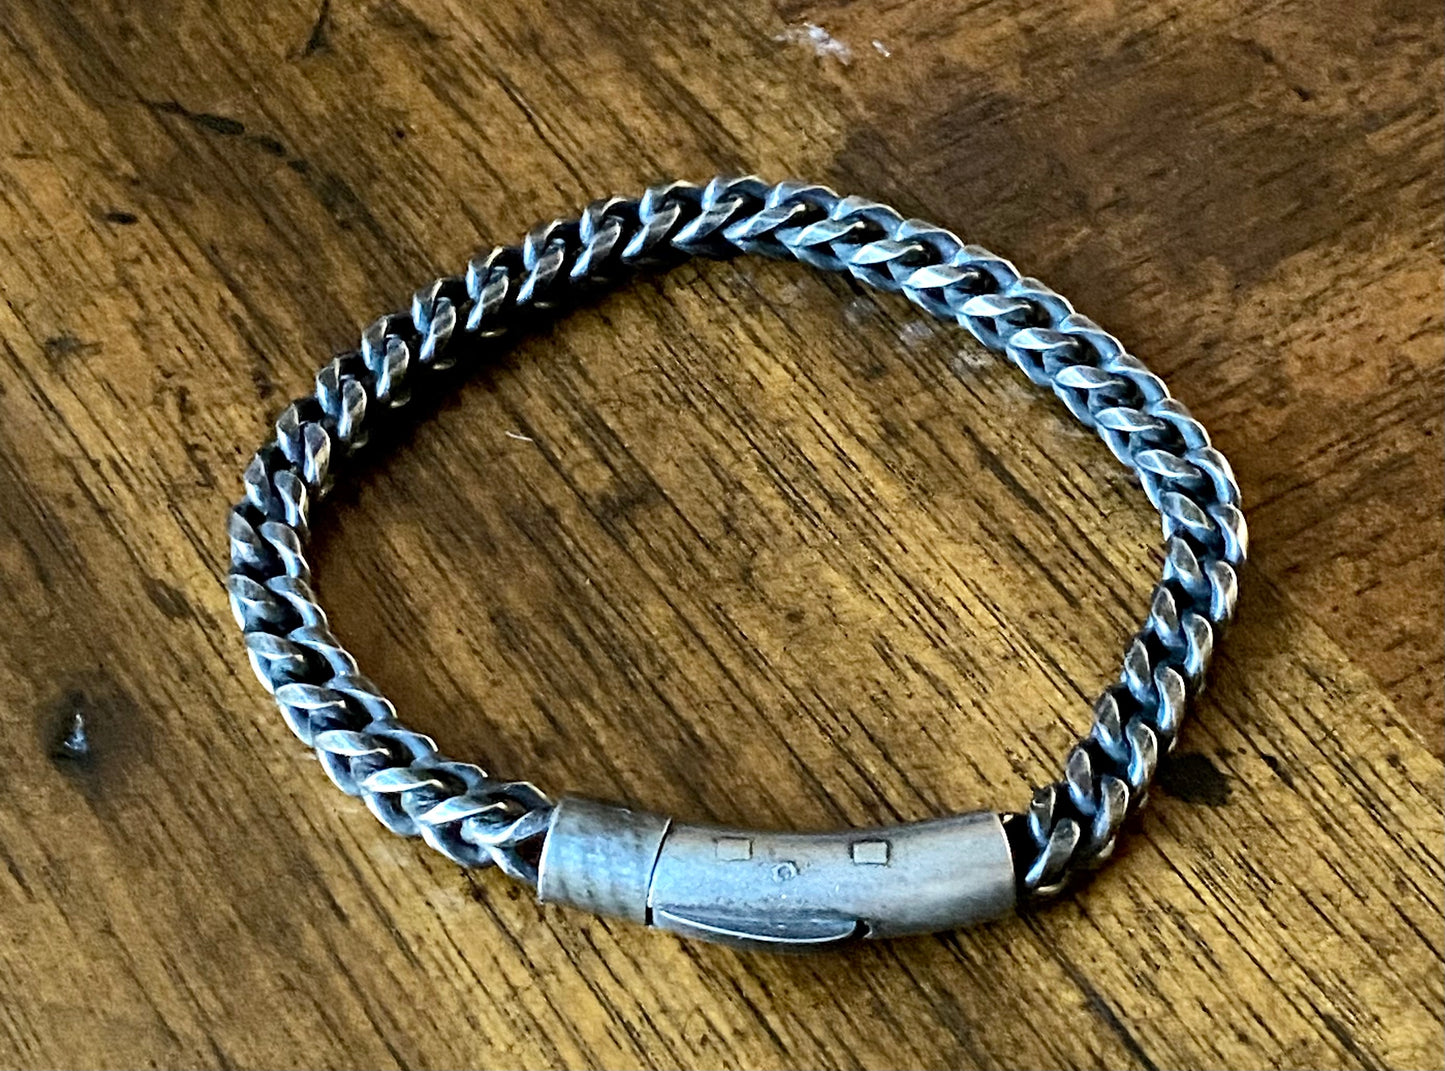 Men's Stainless Steel Chain Link Bracelet